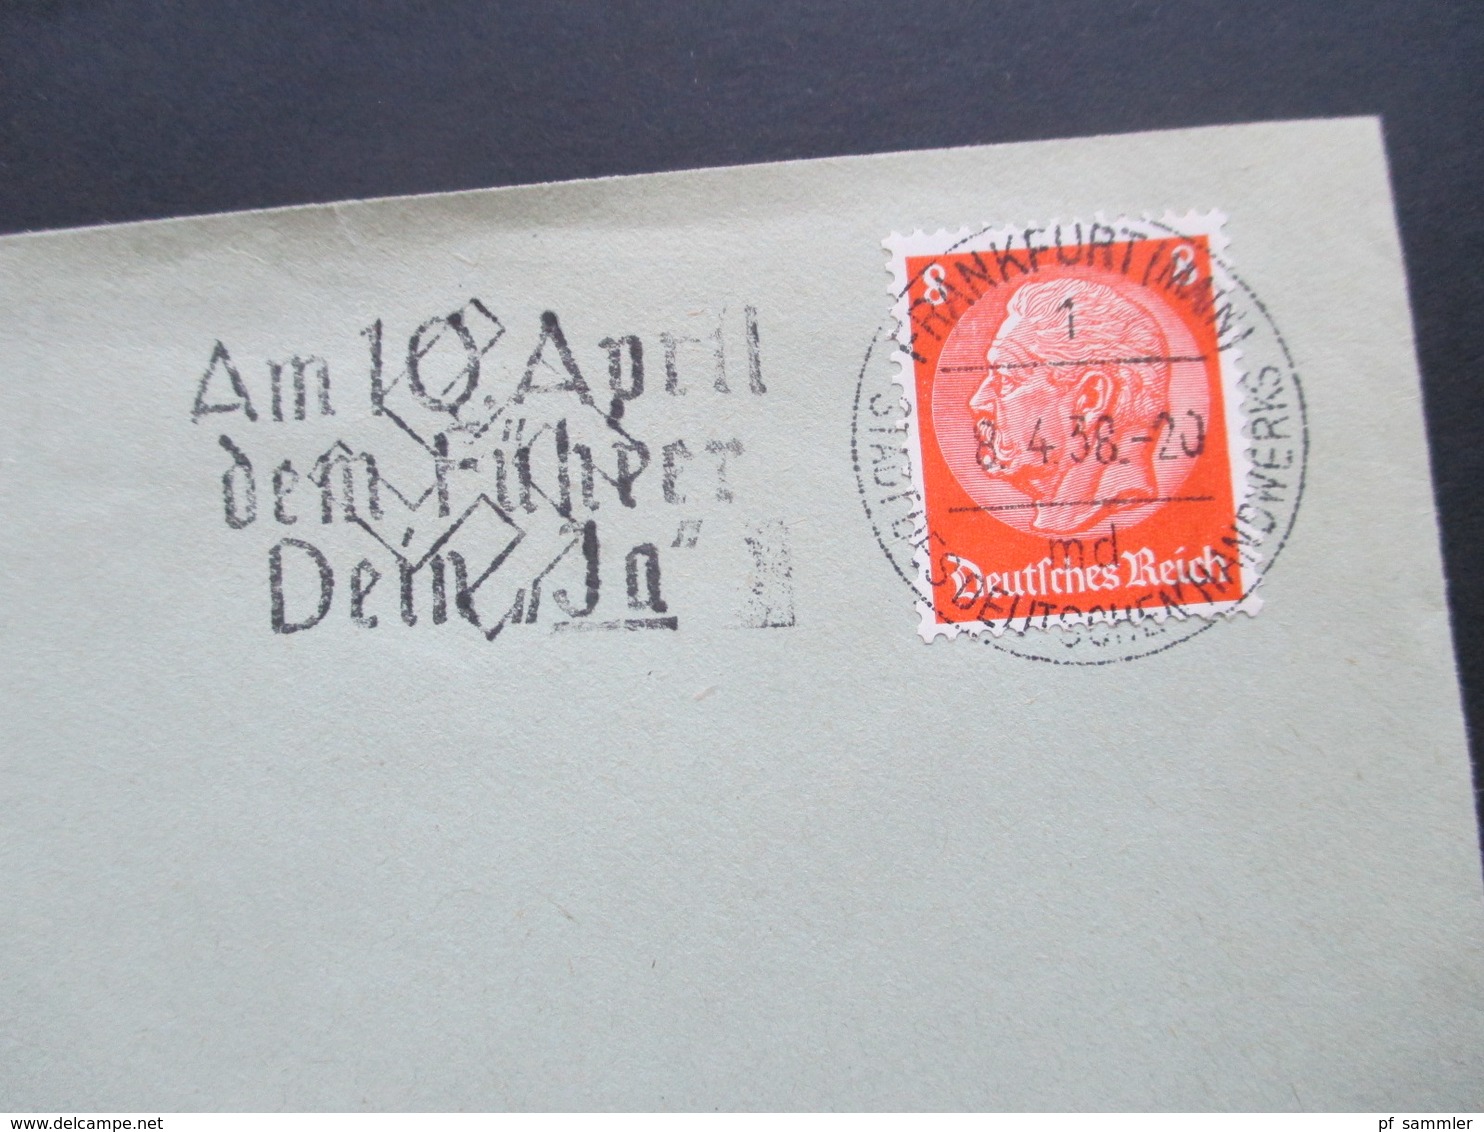 3.Reich 1938 Am 10. April Dem Führer Dein Ja Firmenumschlag Teppiche G. Müller Linoleum Frankfurt / Mail - Briefe U. Dokumente